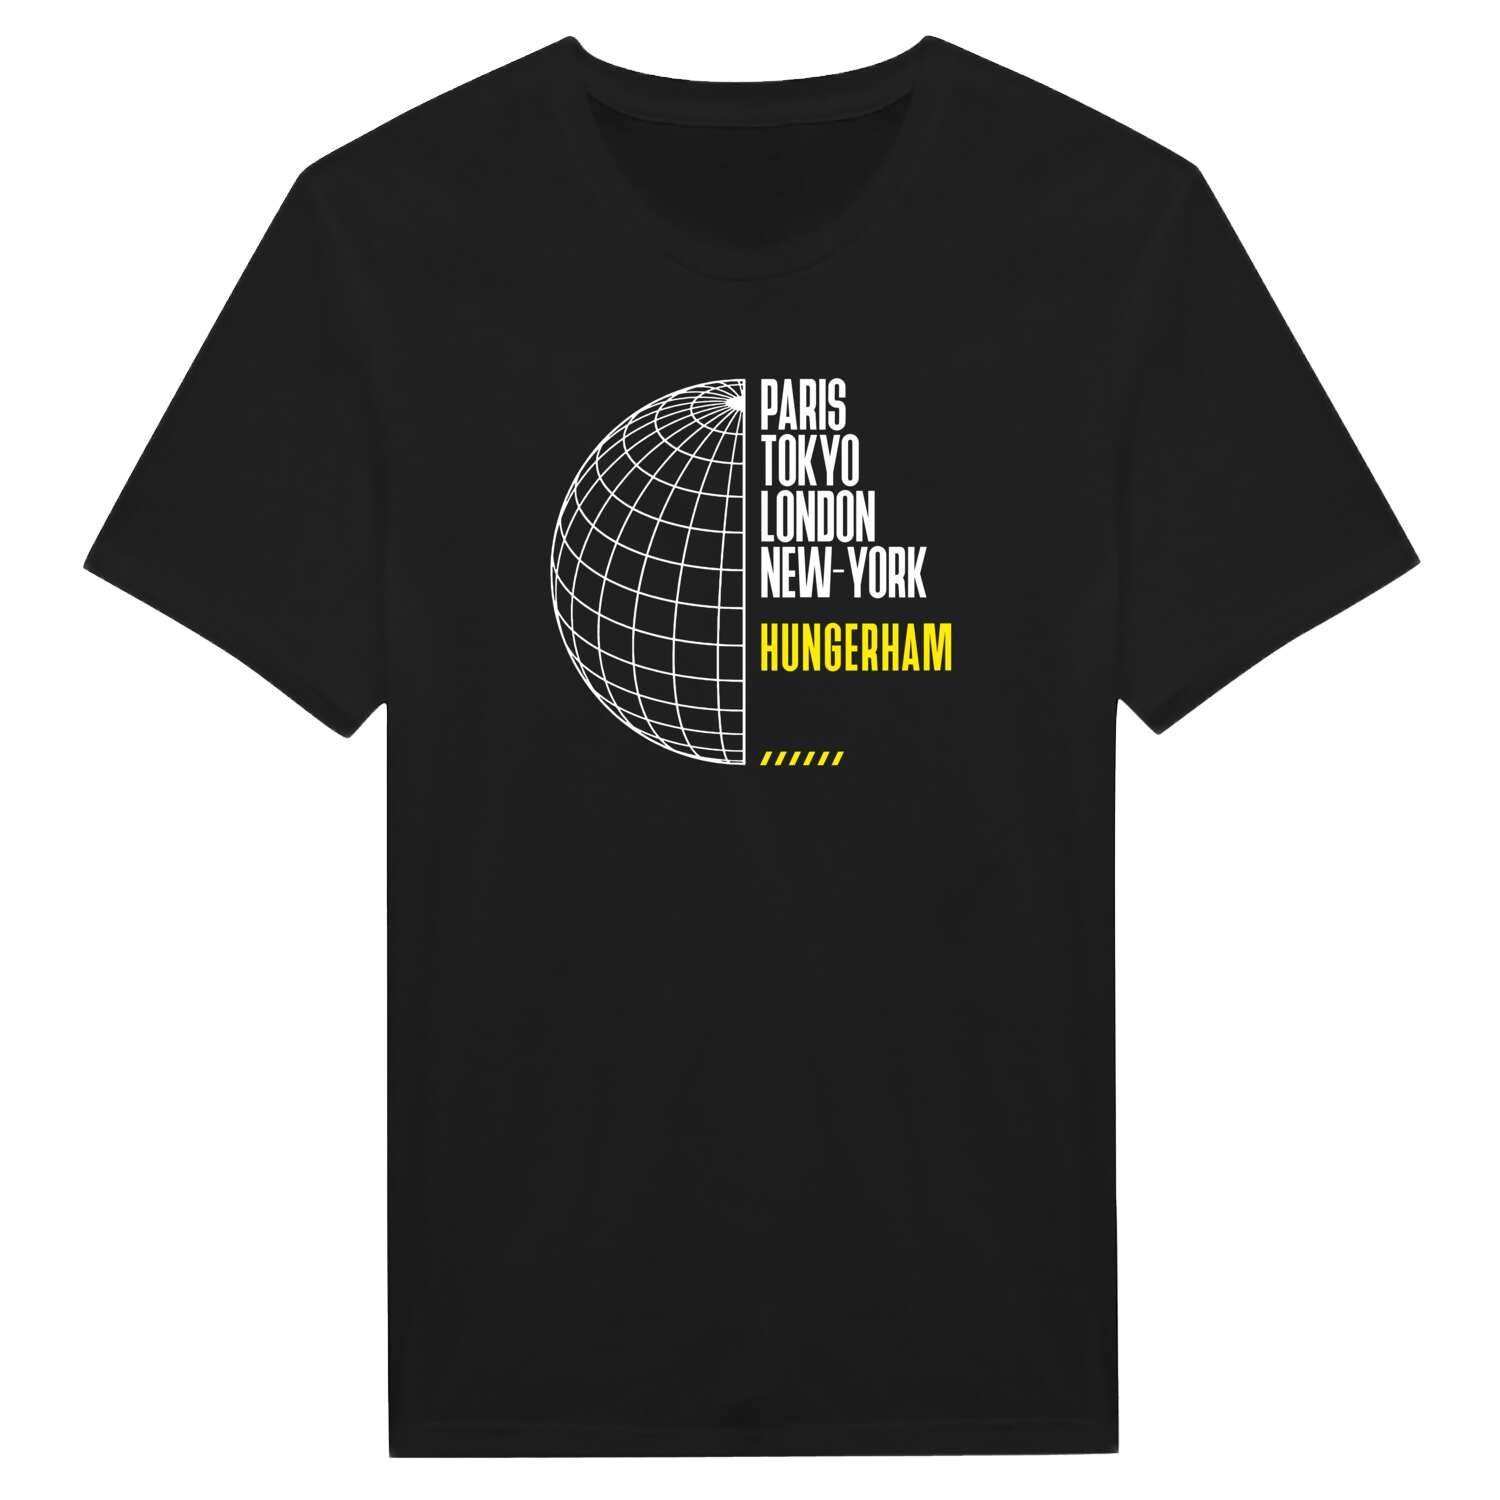 Hungerham T-Shirt »Paris Tokyo London«